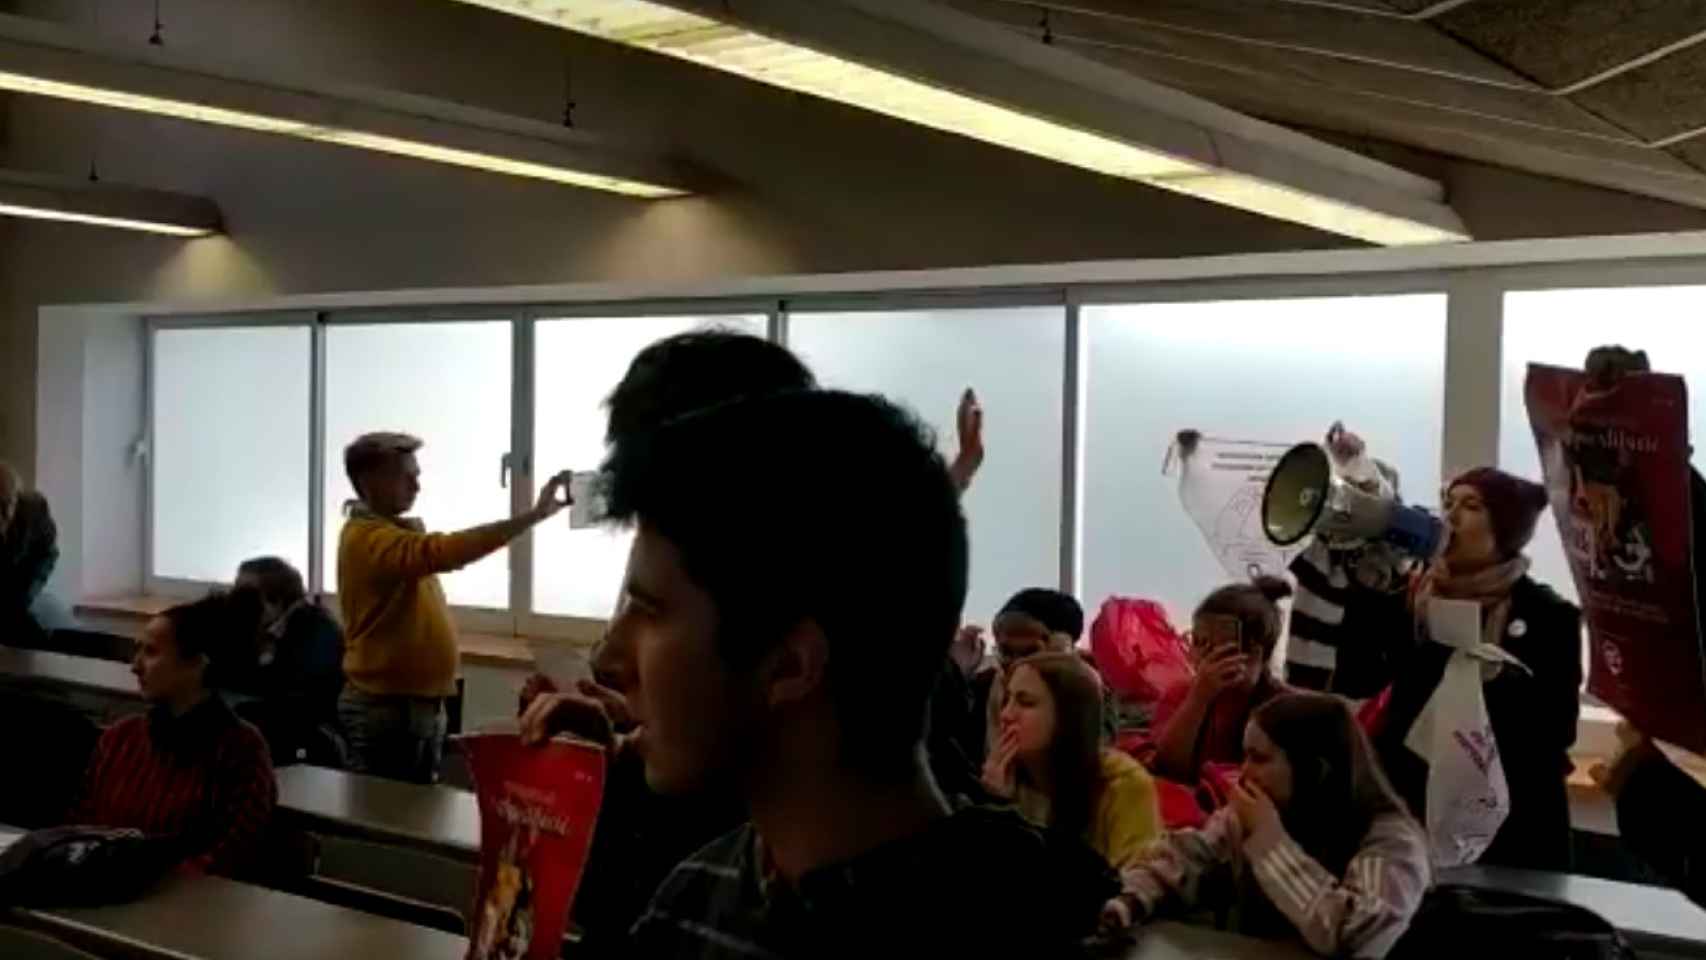 Los estudiantes boicotean el acto con un megáfono